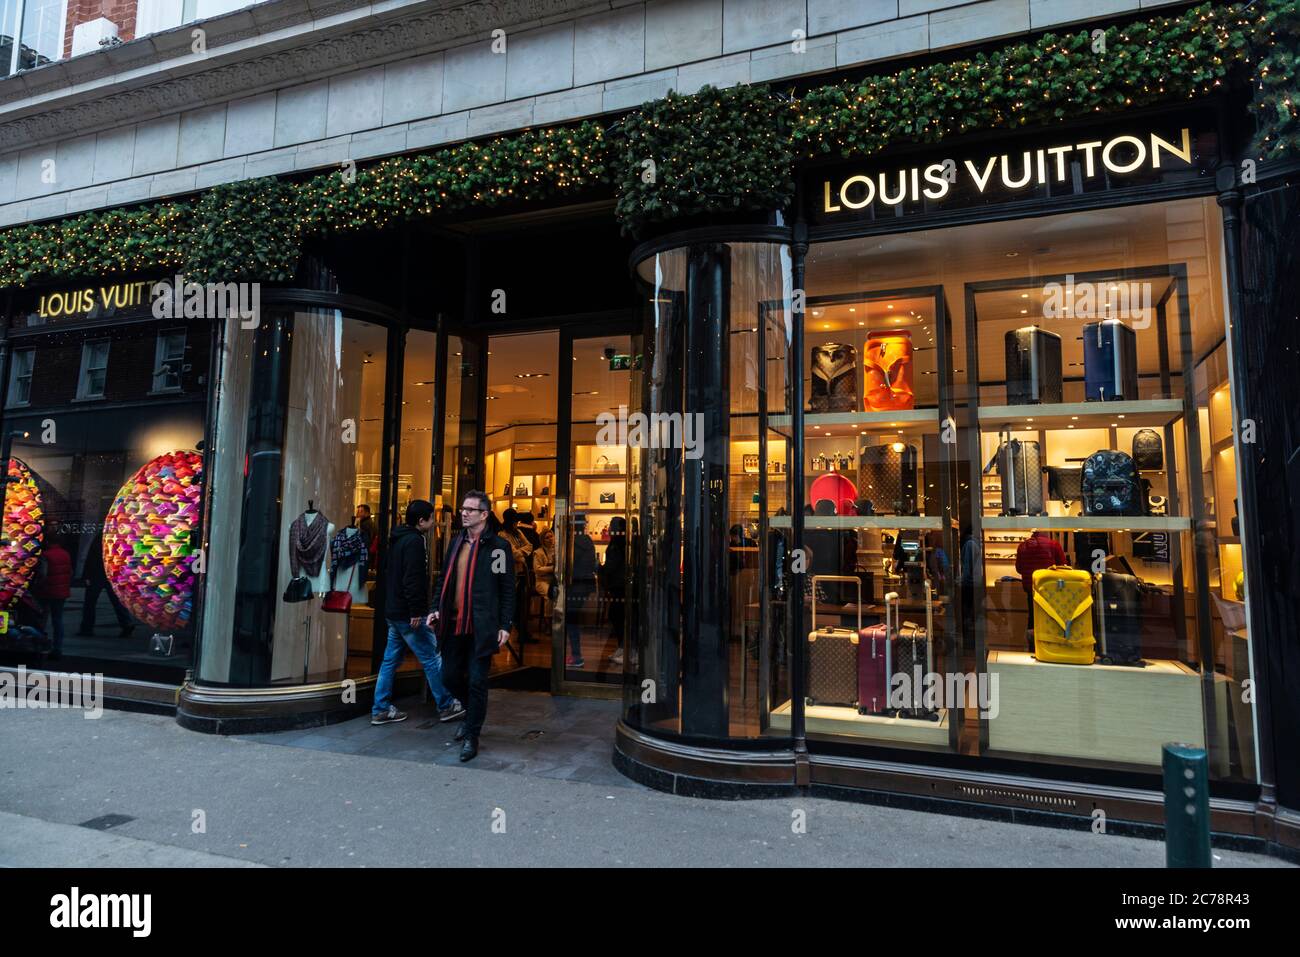 Dublin, Ireland - December 30, 2019: Facade of a Louis Vuitton